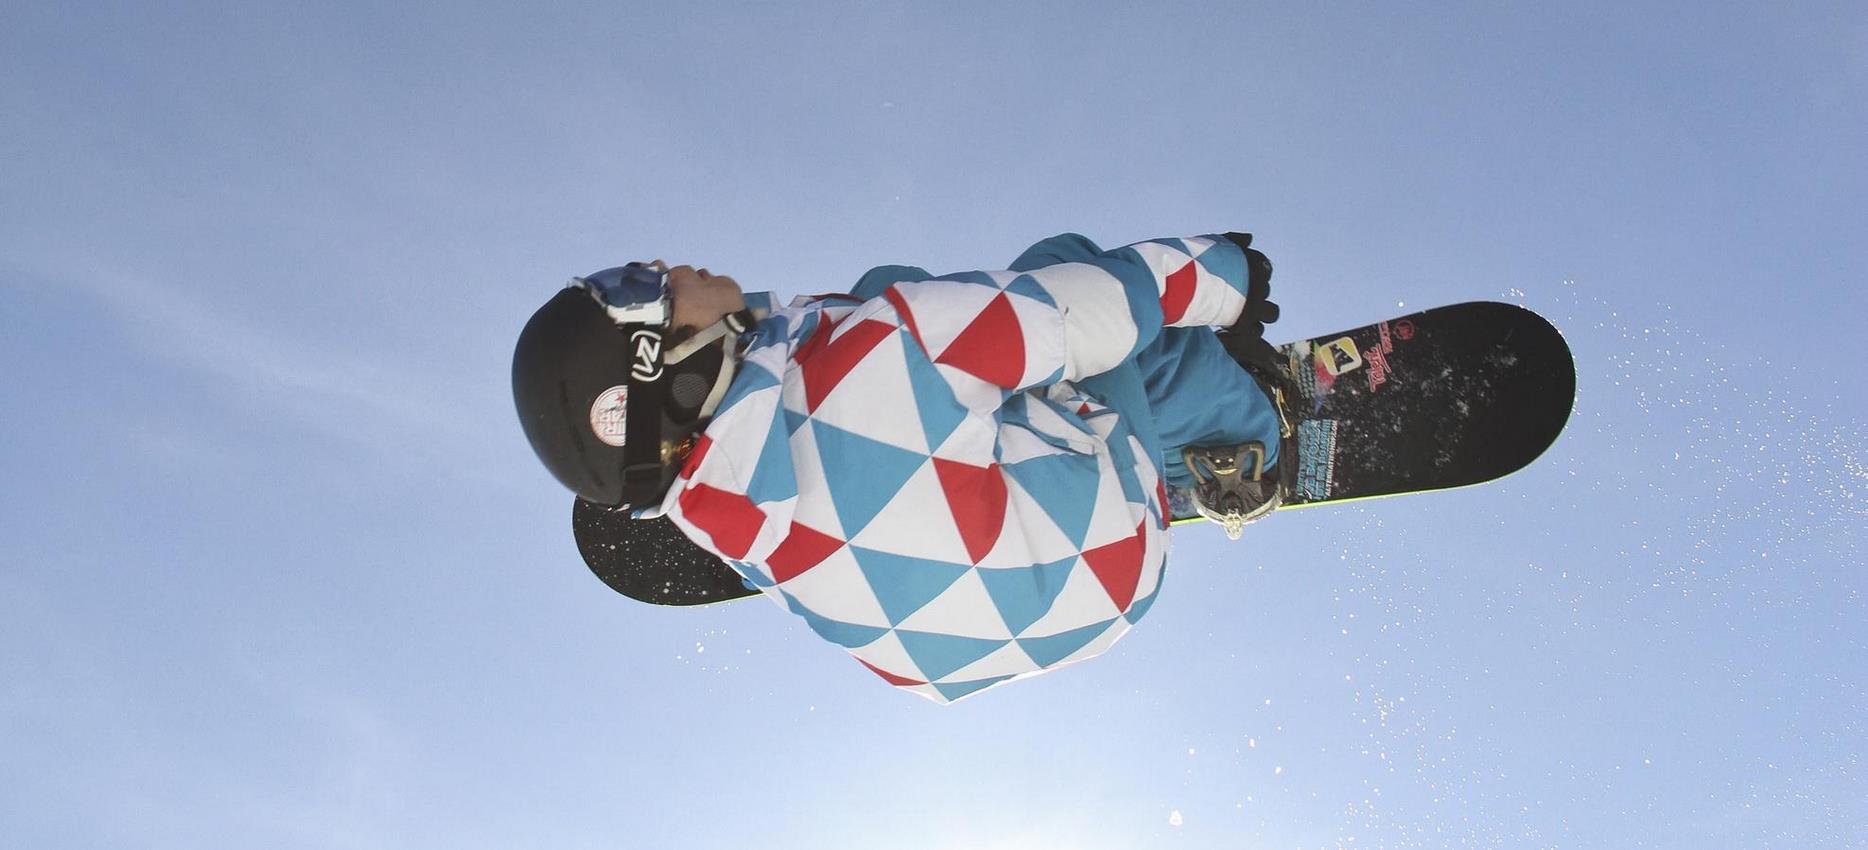 Super Besse - Snowboard jump in Super Besse